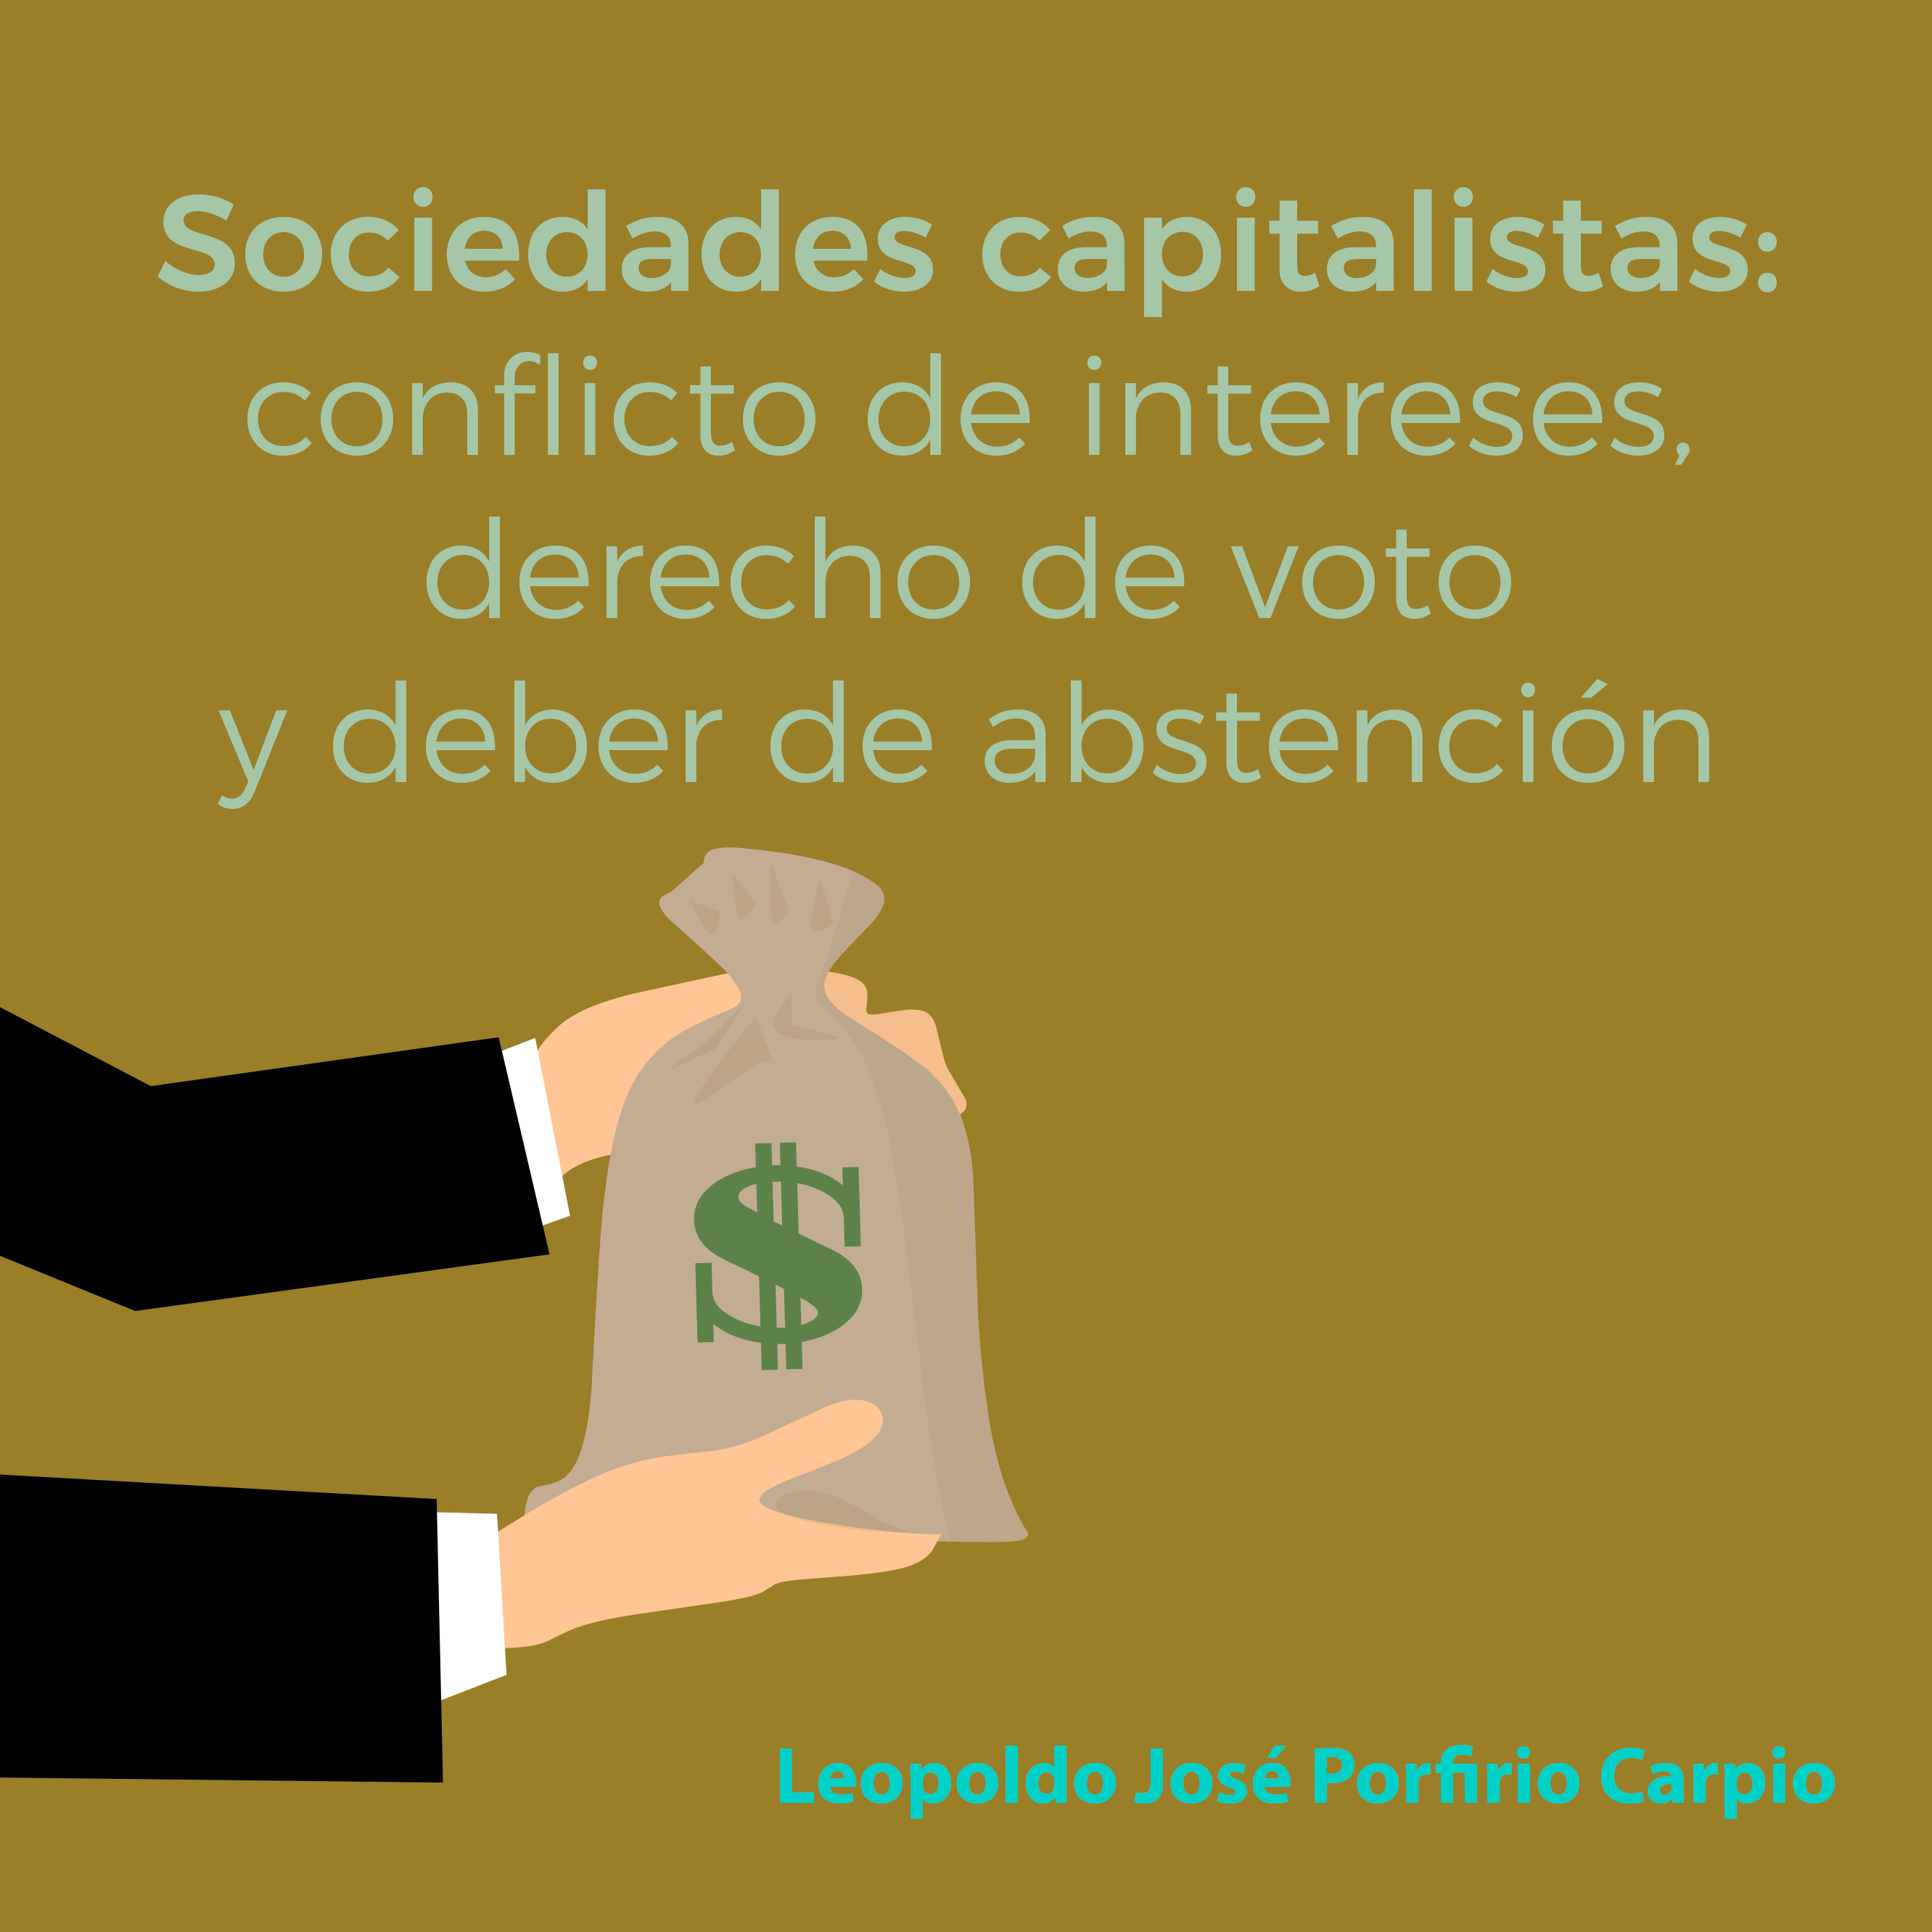 Sociedades capitalistas: conflicto de intereses, derecho de voto y deber de abstención